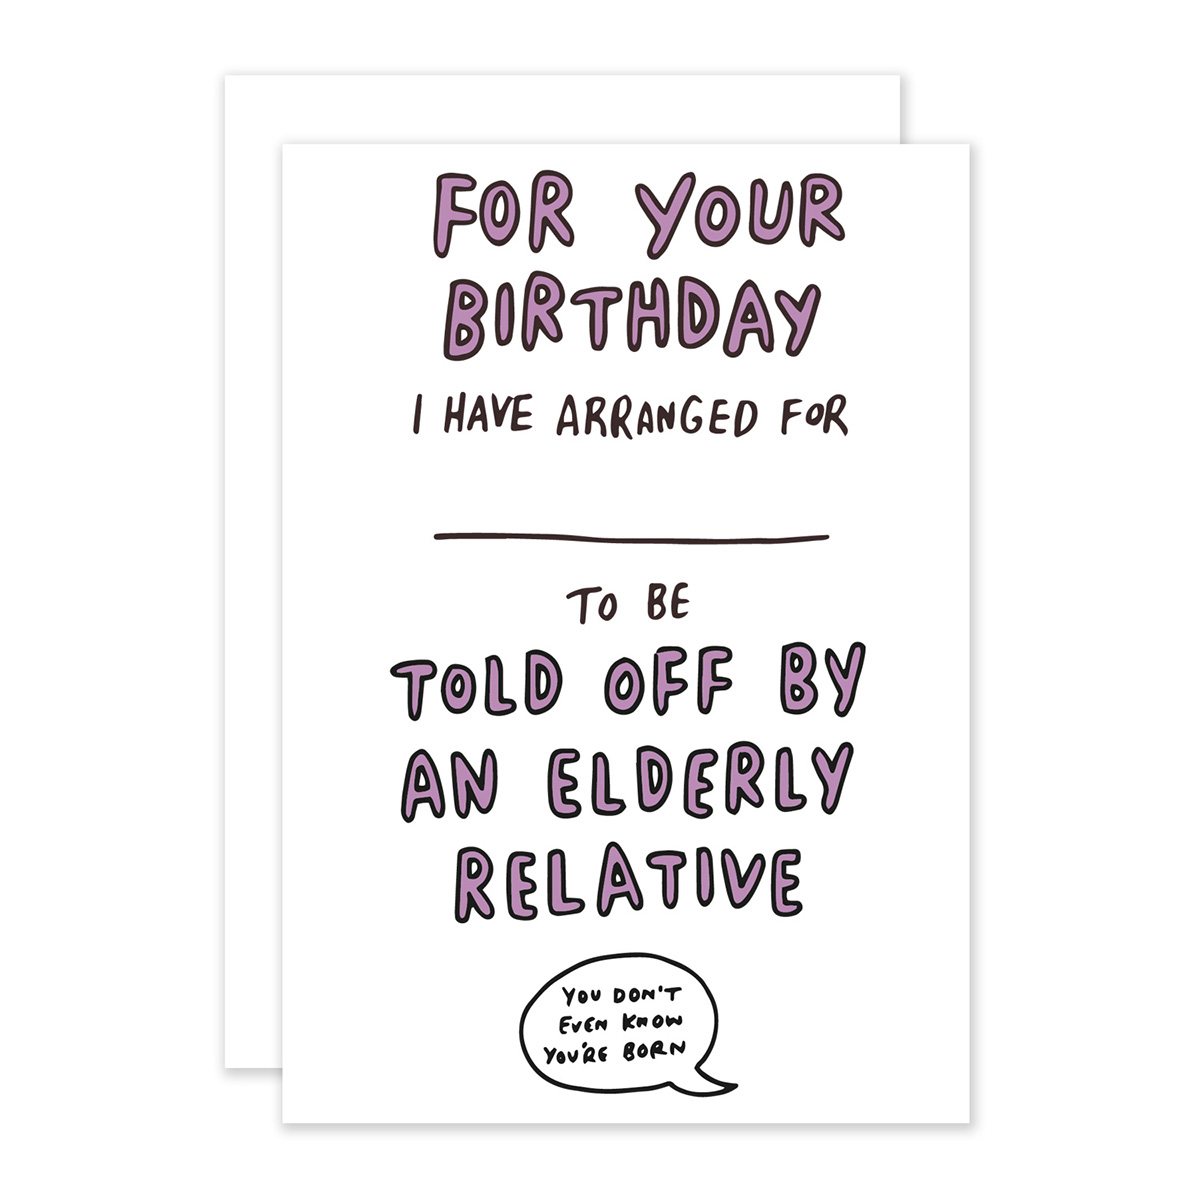 humorous greetings cards Greetings card design